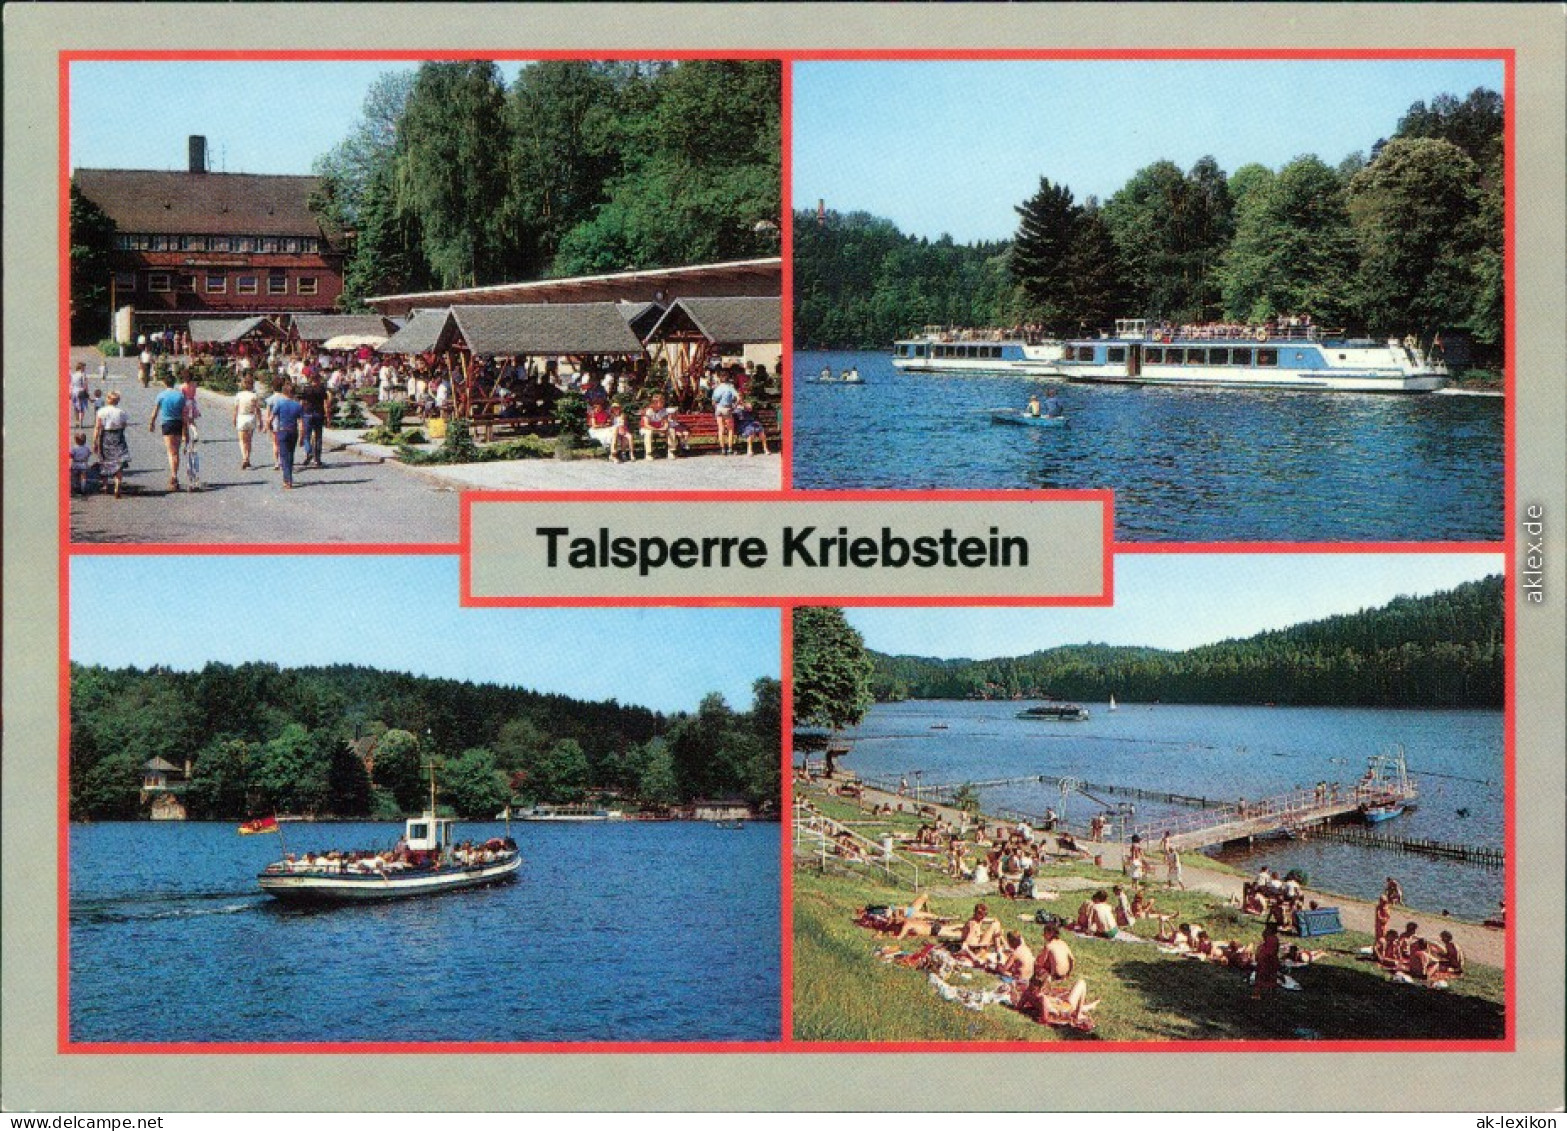 Lauenhain Mittweida Talsperre  OH-Gaststätte Talsperre Kriebstein,   1988 - Mittweida